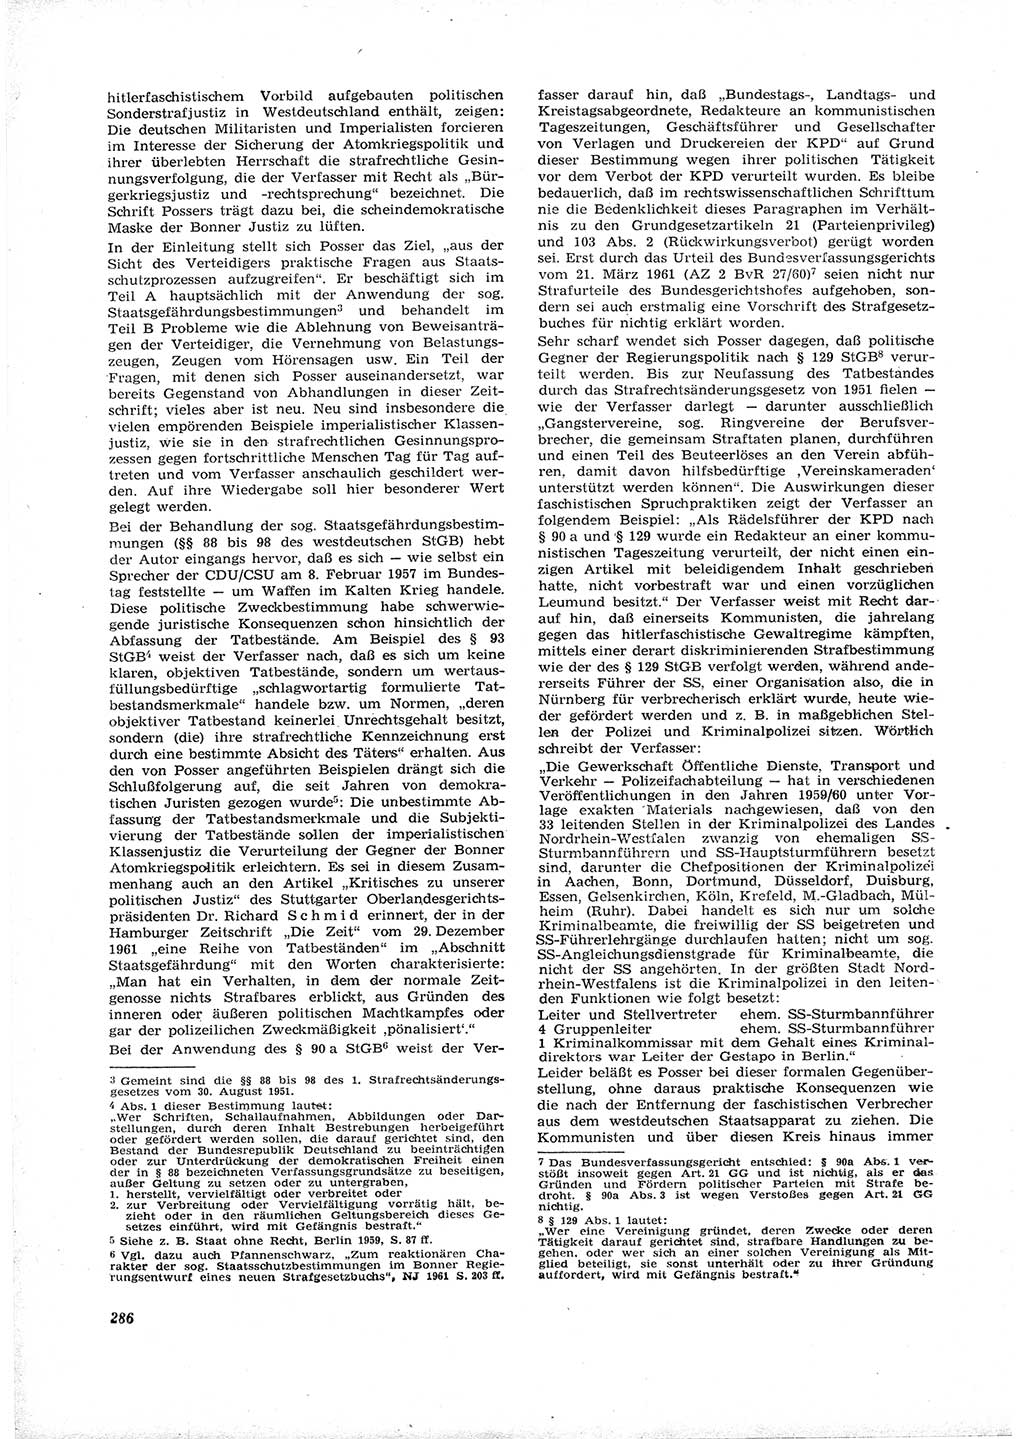 Neue Justiz (NJ), Zeitschrift für Recht und Rechtswissenschaft [Deutsche Demokratische Republik (DDR)], 16. Jahrgang 1962, Seite 286 (NJ DDR 1962, S. 286)